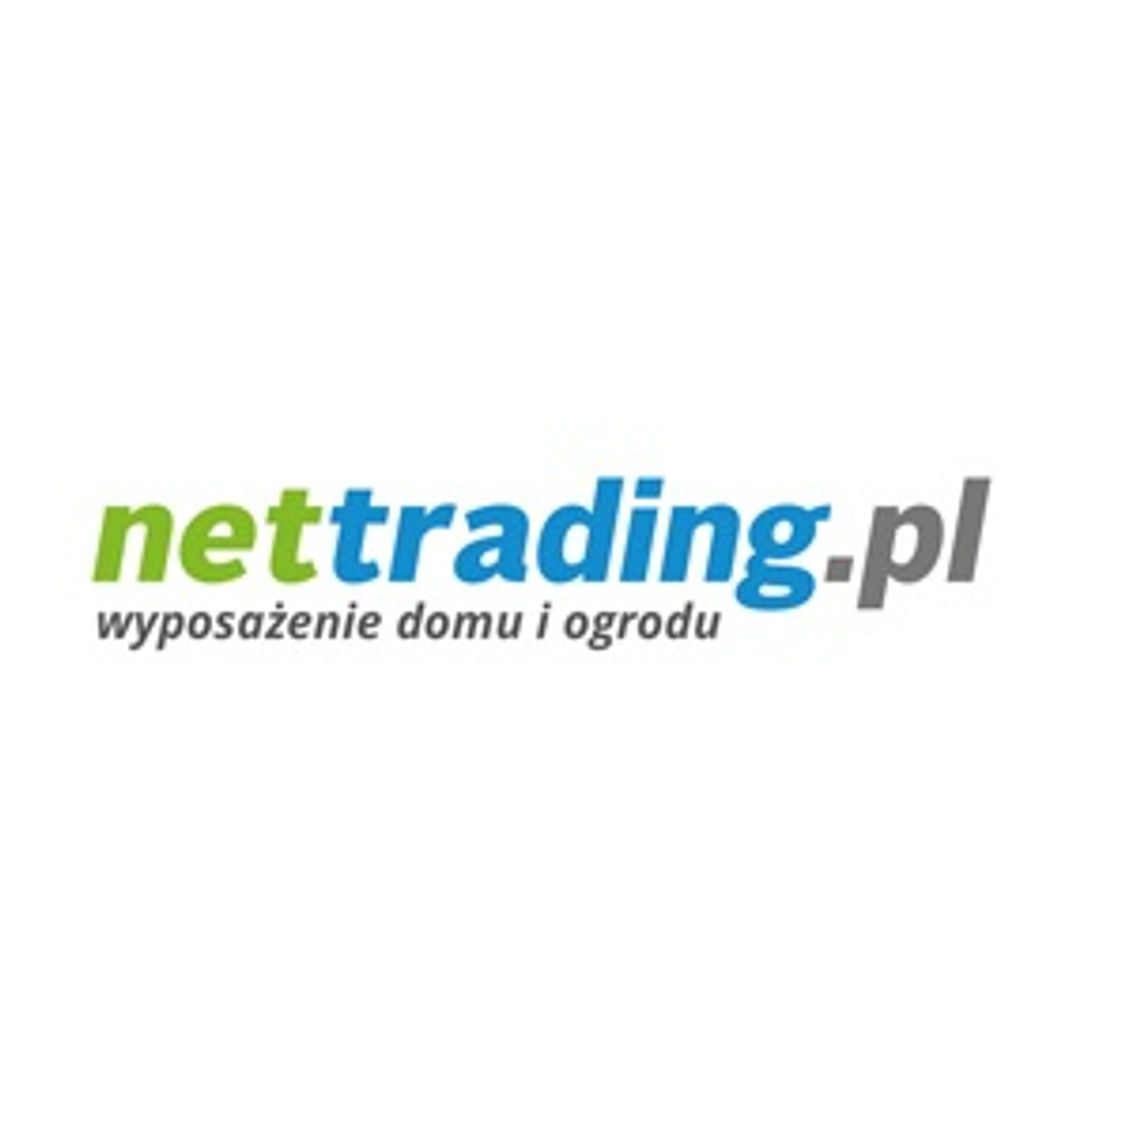 NetTrading - wyposażenie wnętrz i ogrodu